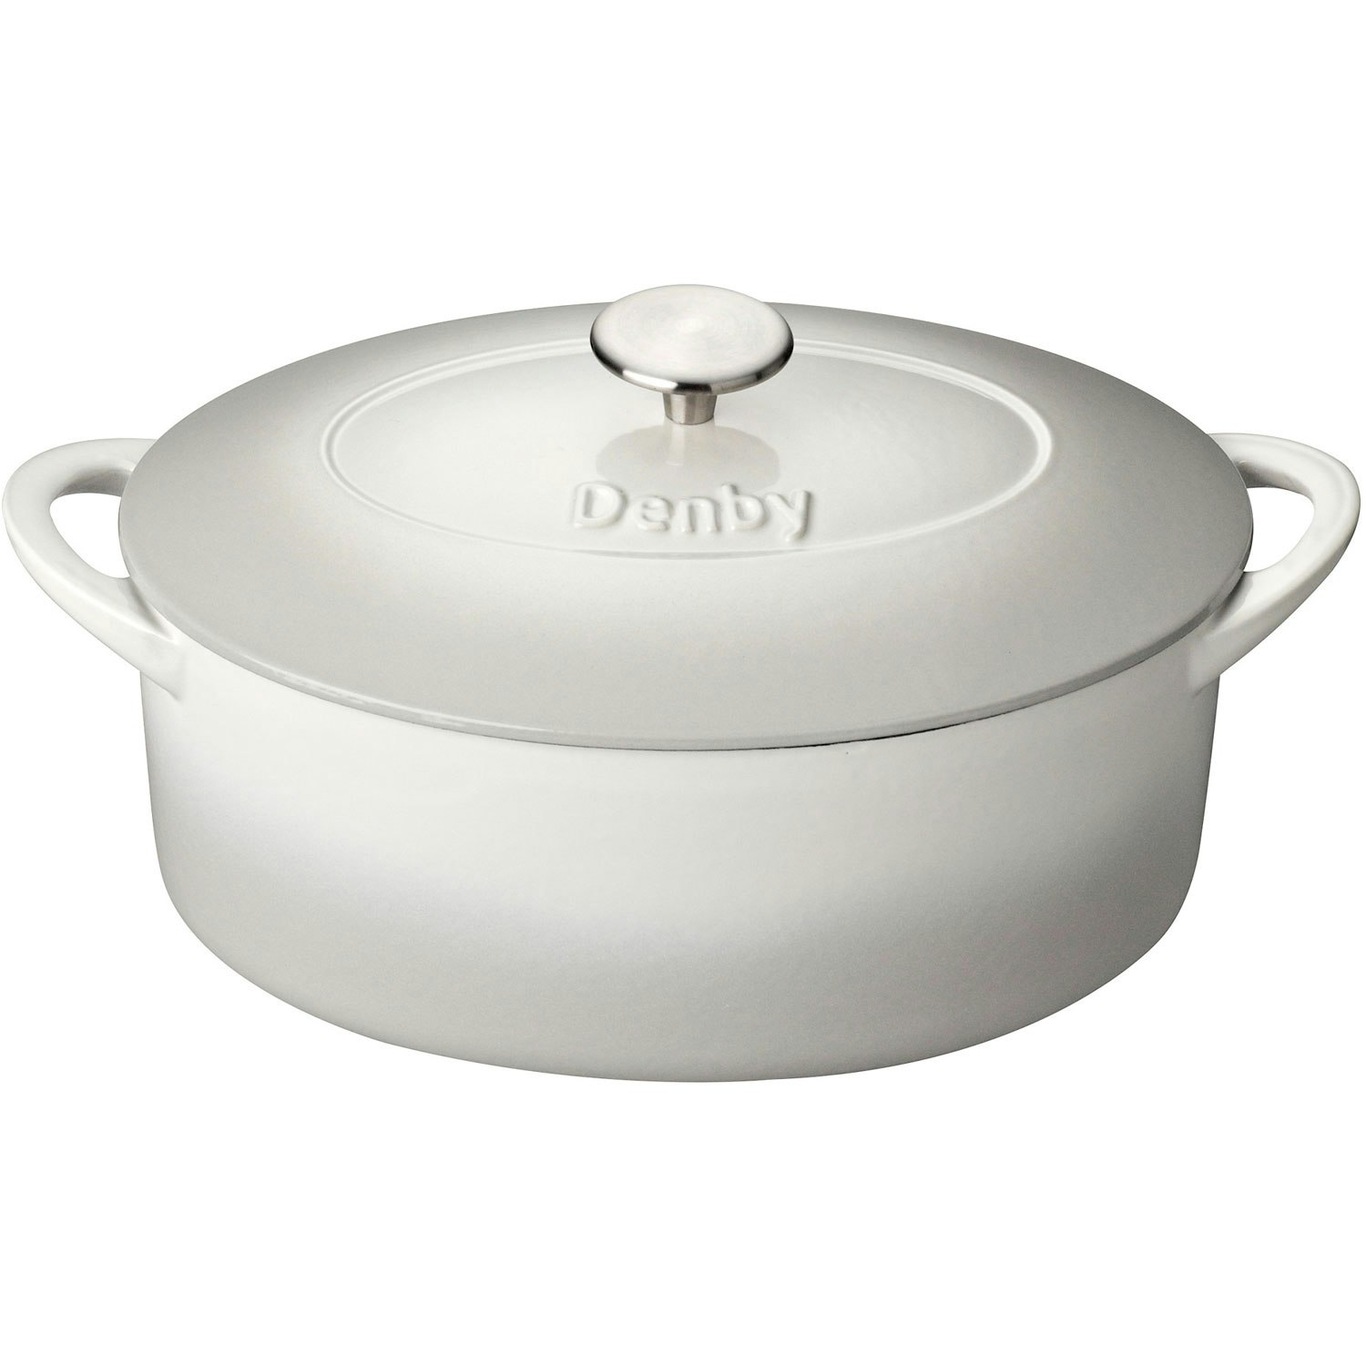 https://royaldesign.com/image/2/denby-cast-iron-28cm-oval-casserole-10?w=800&quality=80